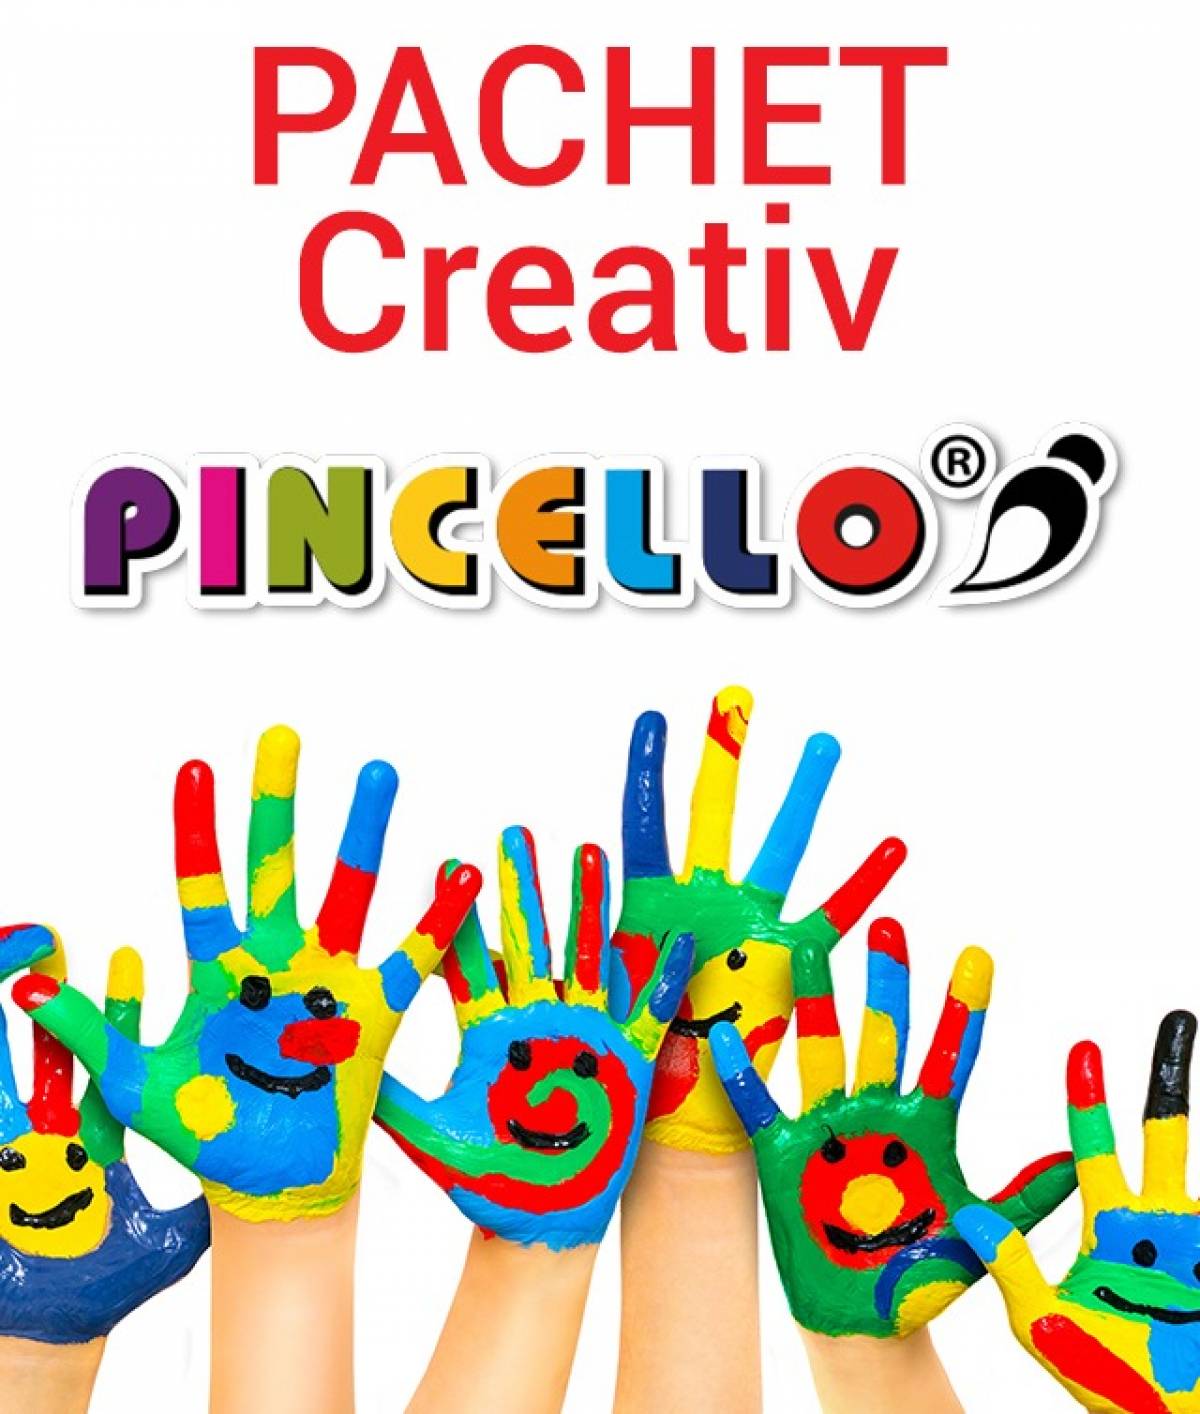 Pachet Creativ PINCELLO, Set complet de rechizite pentru copii creativi